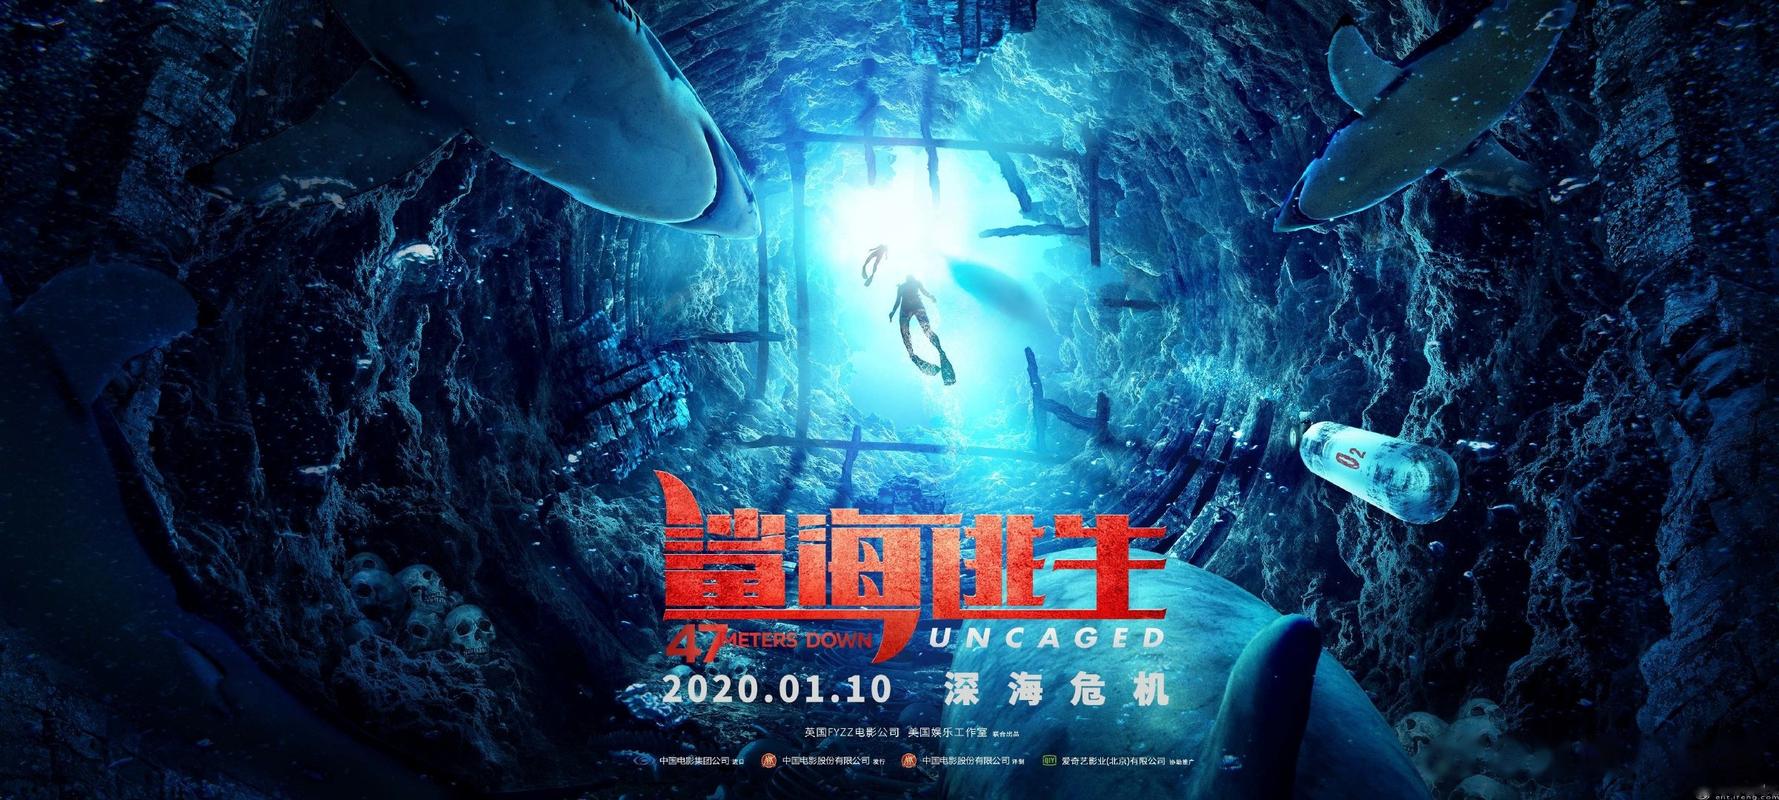 电影《鲨海逃生》1月10日将再次震撼登陆银幕.